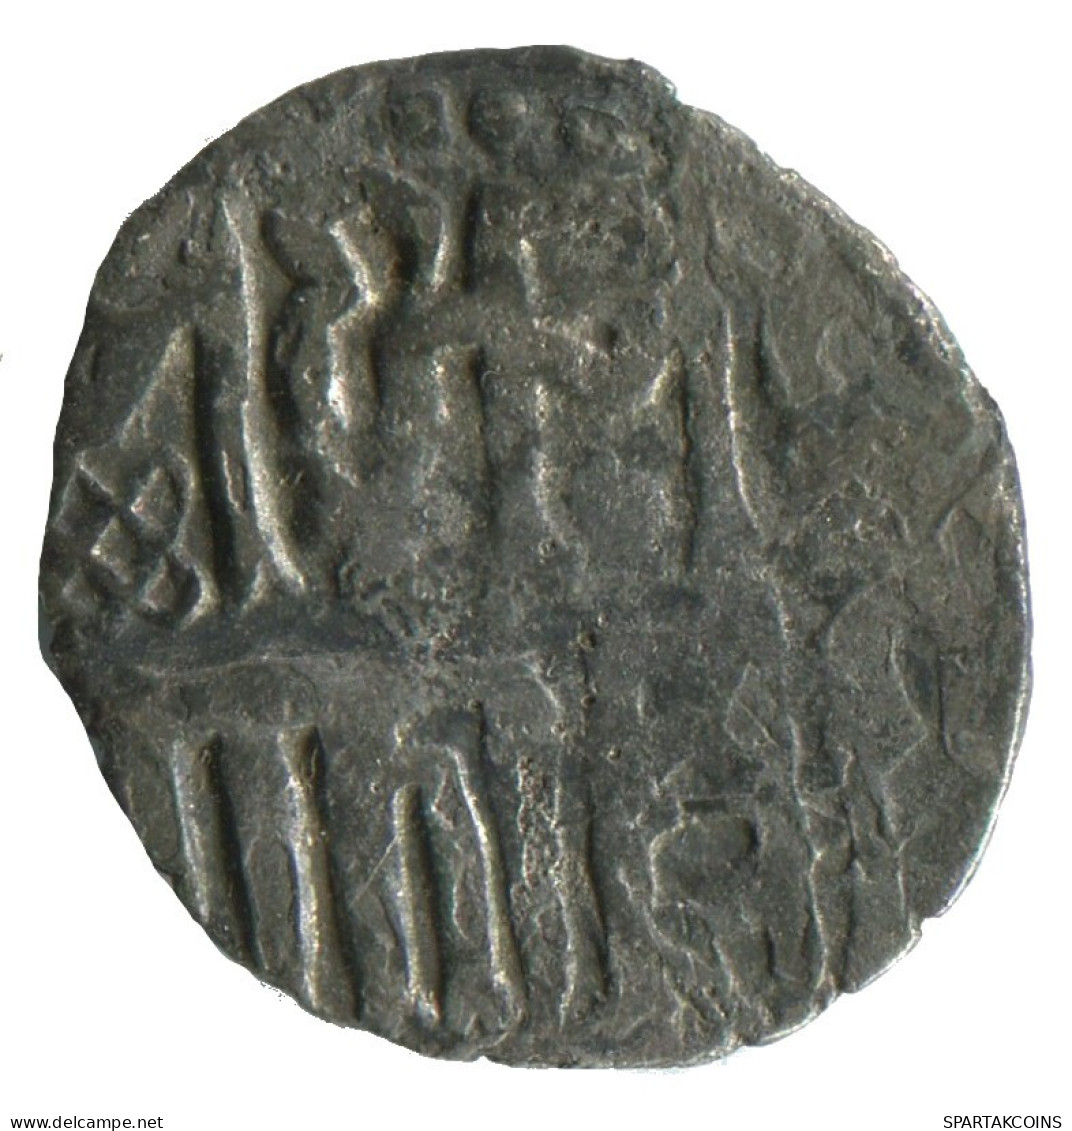 GOLDEN HORDE Silver Dirham Medieval Islamic Coin 1.4g/17mm #NNN2022.8.U.A - Islamiche